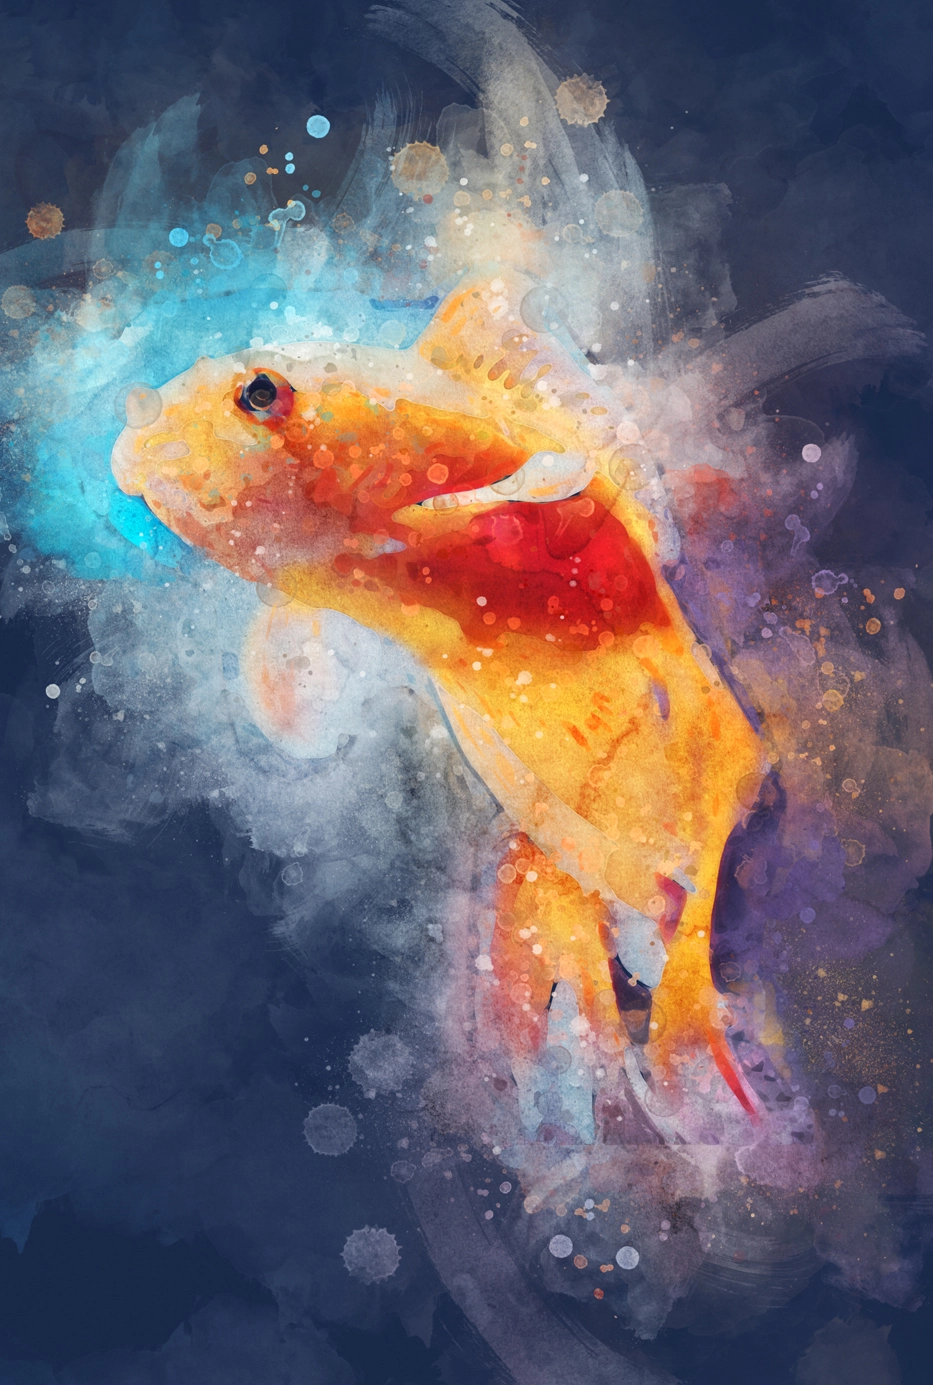 Digital goldfish 